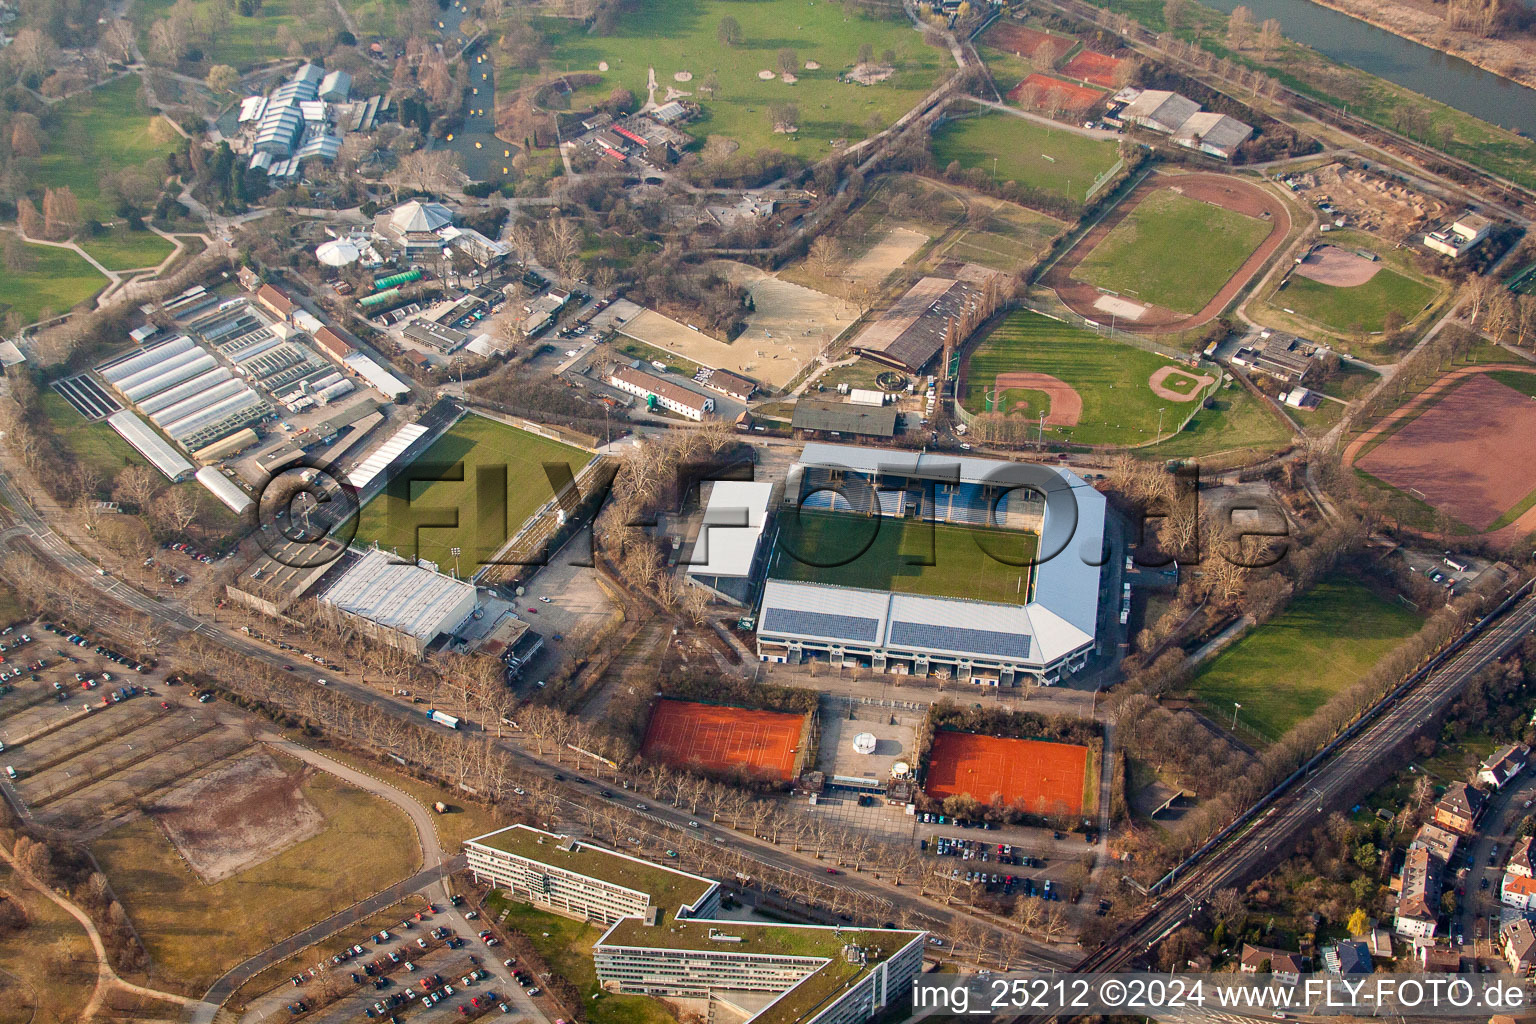 Rhine-Neckar Stadium in the district Oststadt in Mannheim in the state Baden-Wuerttemberg, Germany